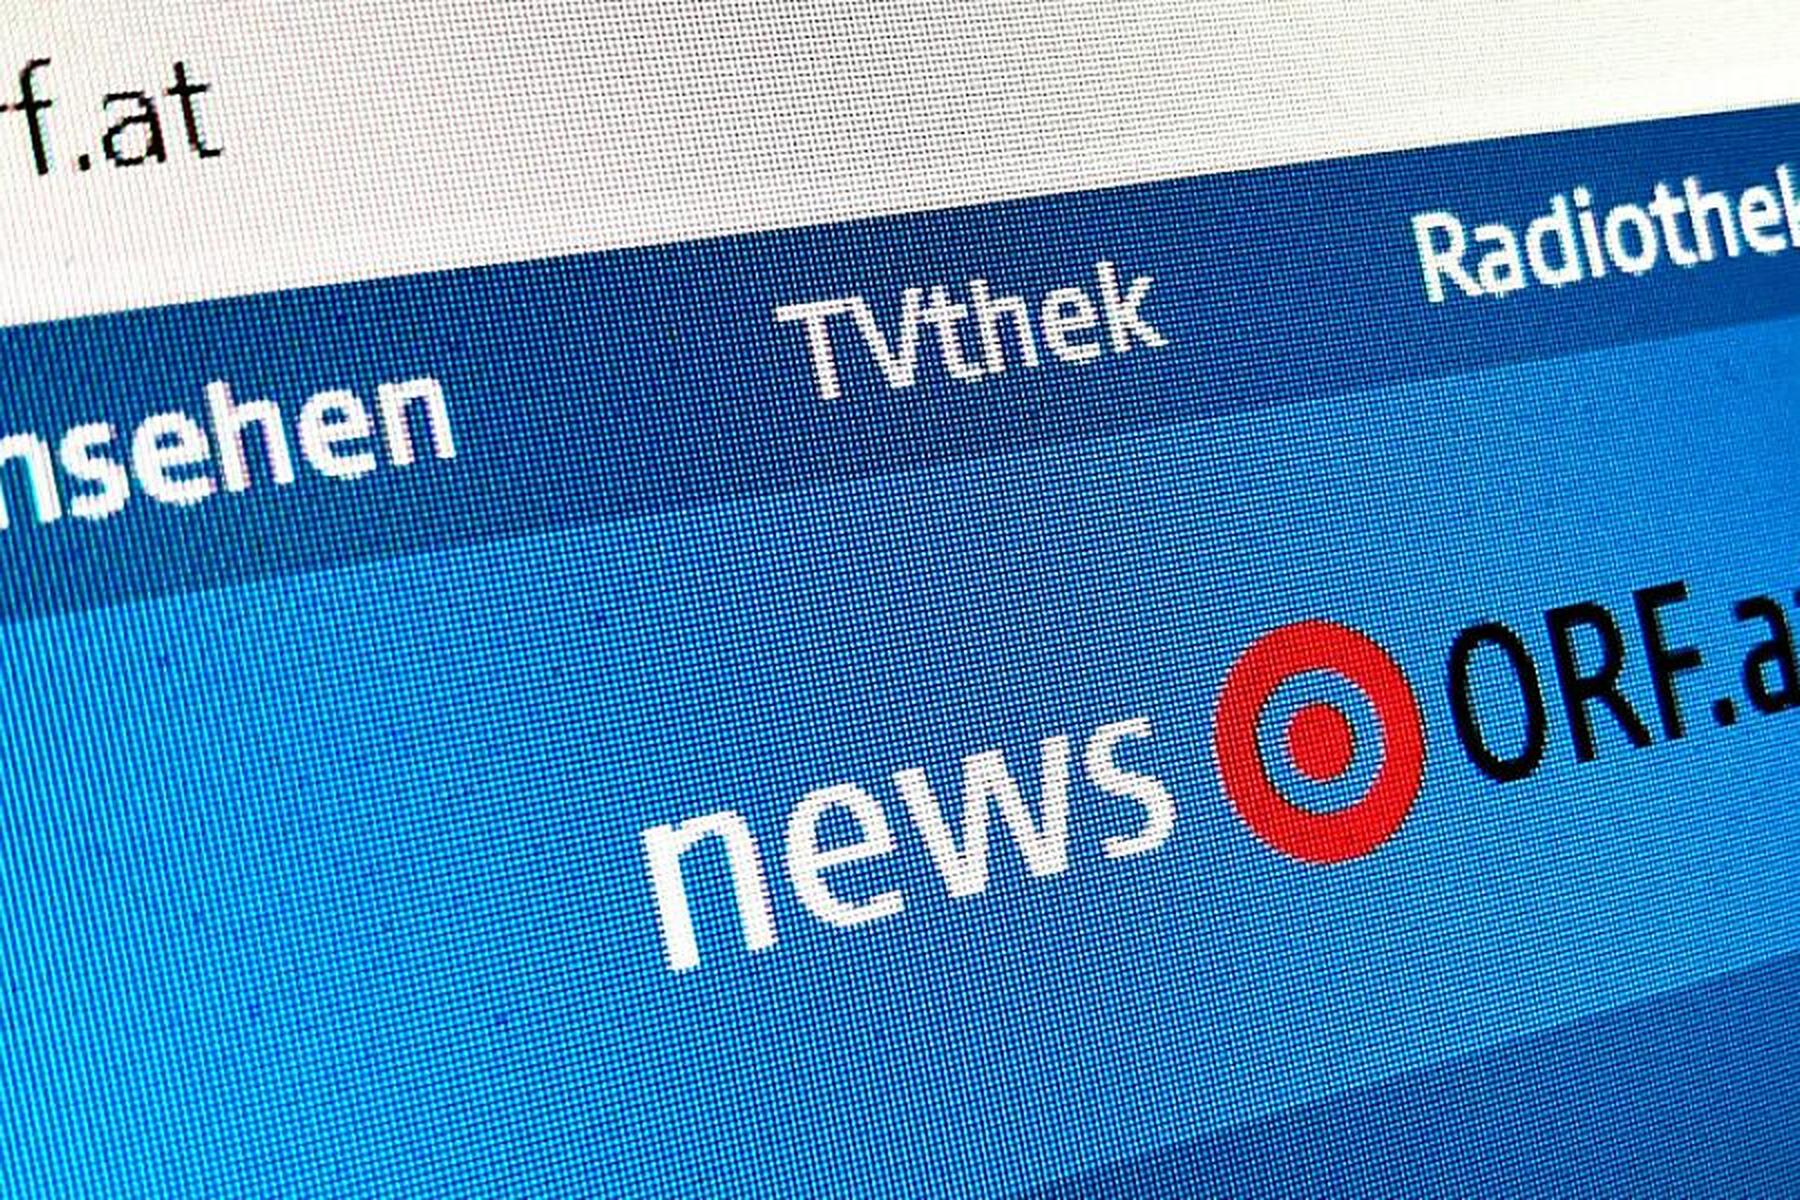 Wien: ORF.at wird trotz Umstellung 